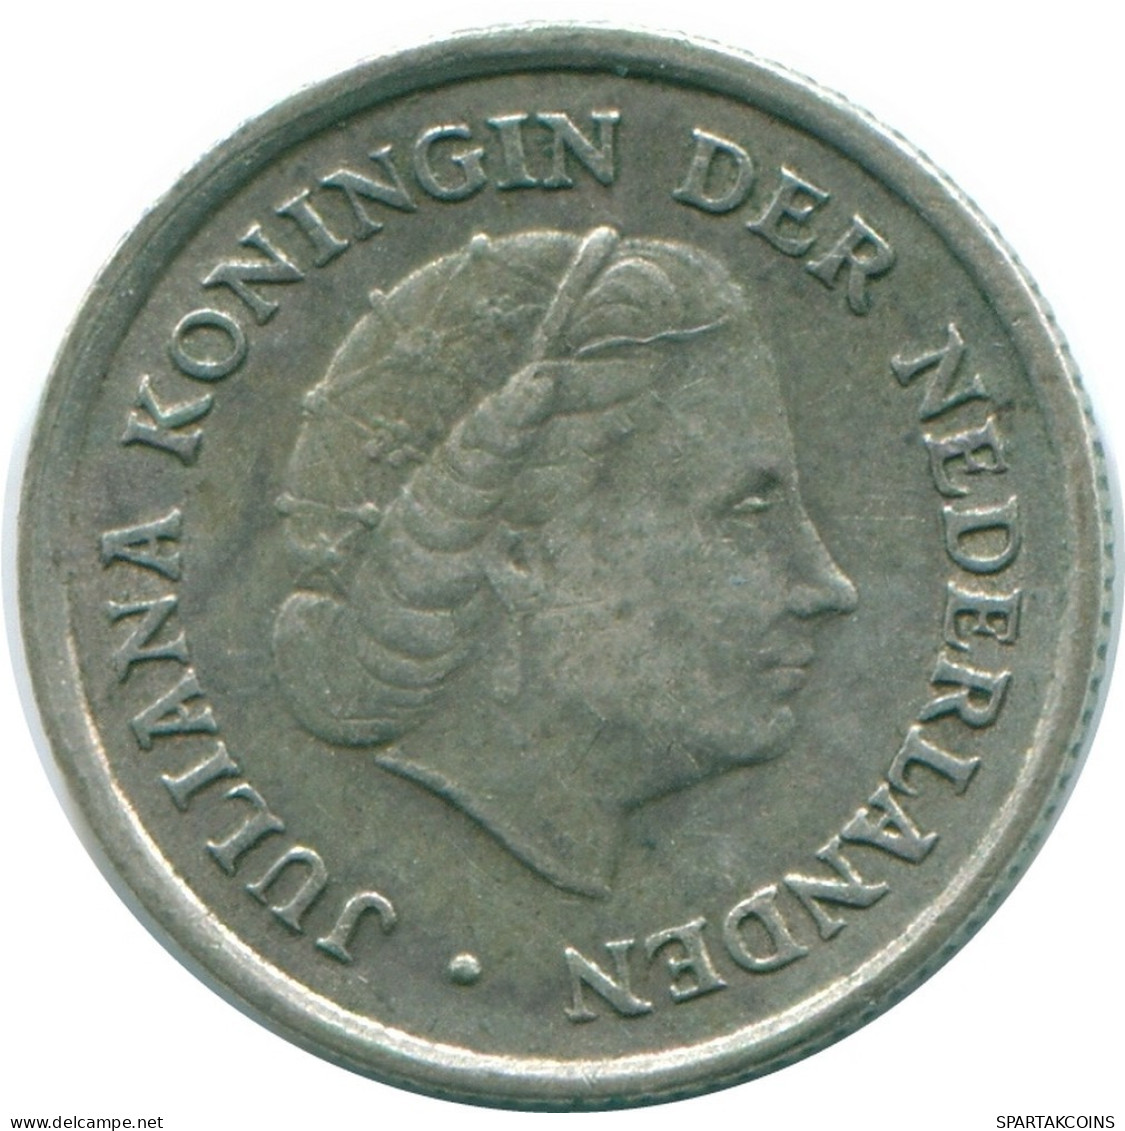 1/10 GULDEN 1970 NIEDERLÄNDISCHE ANTILLEN SILBER Koloniale Münze #NL13056.3.D.A - Nederlandse Antillen